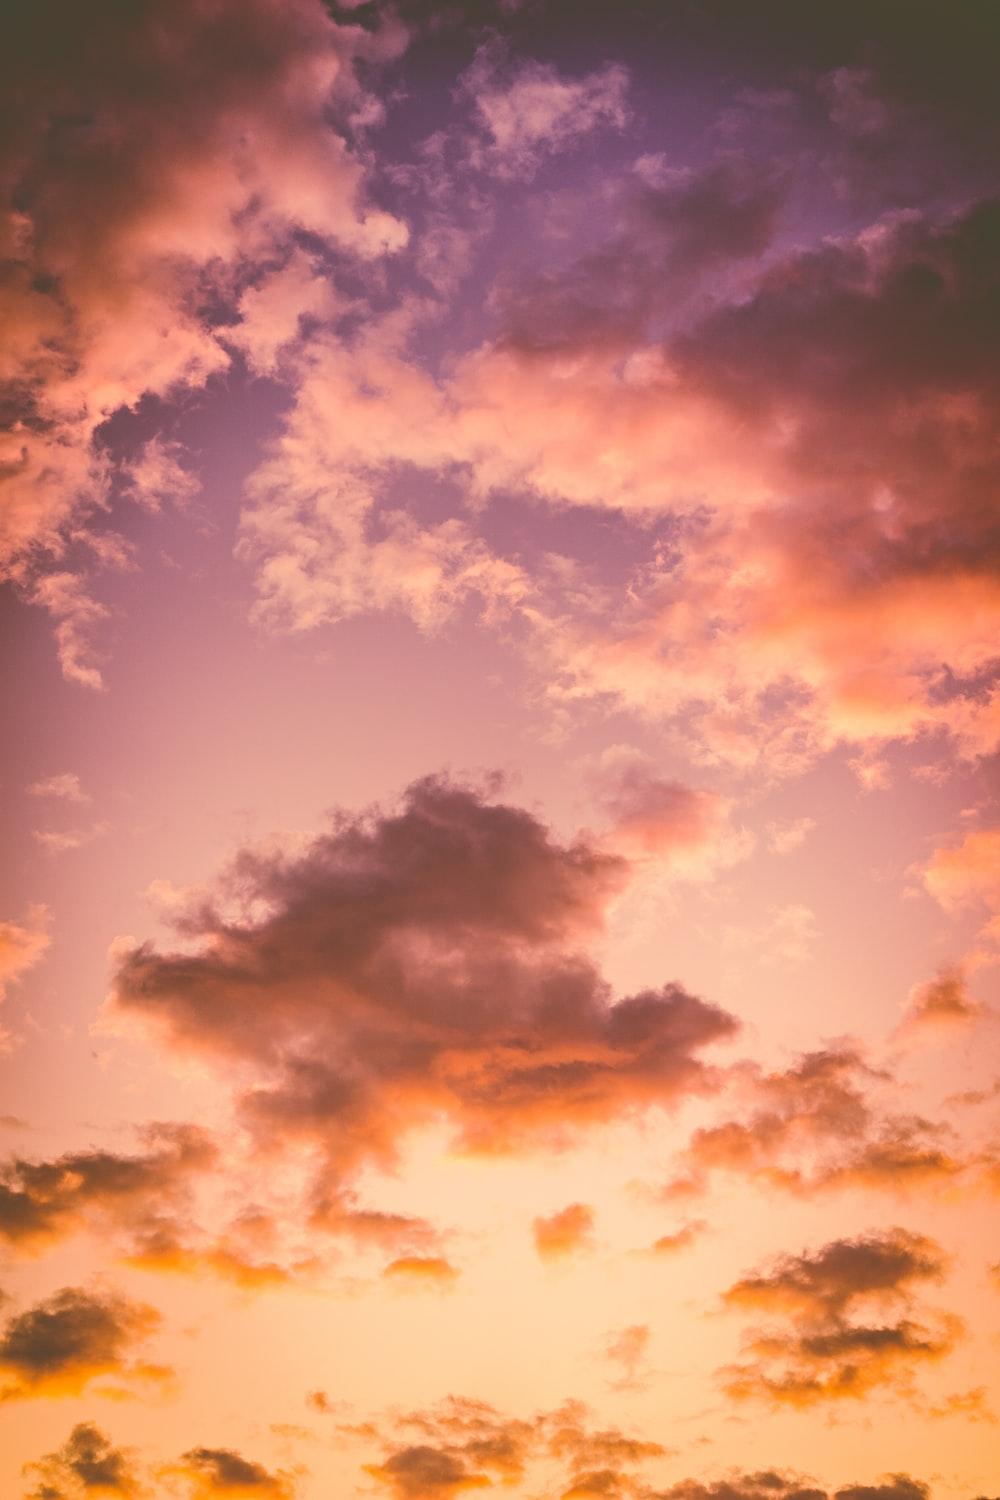 Sunset Image [Stunning!]. Download Free Image